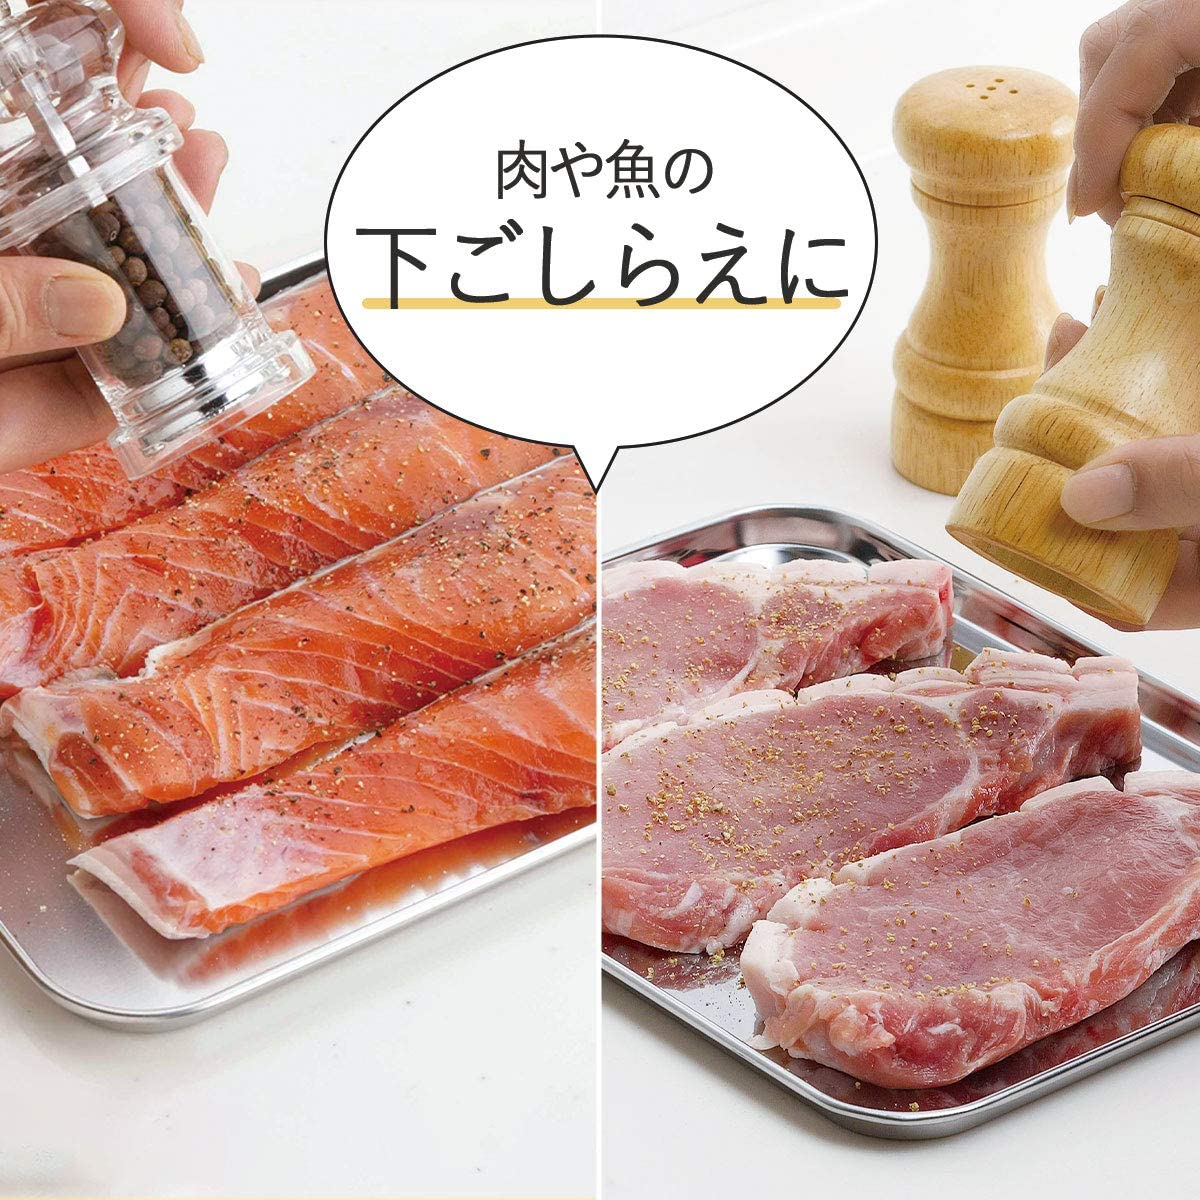 Khay đựng thực phẩm đa năng Echo Metal - Hàng nội địa Nhật Bản |#Made in Japan| |#nhập khẩu chính hãng